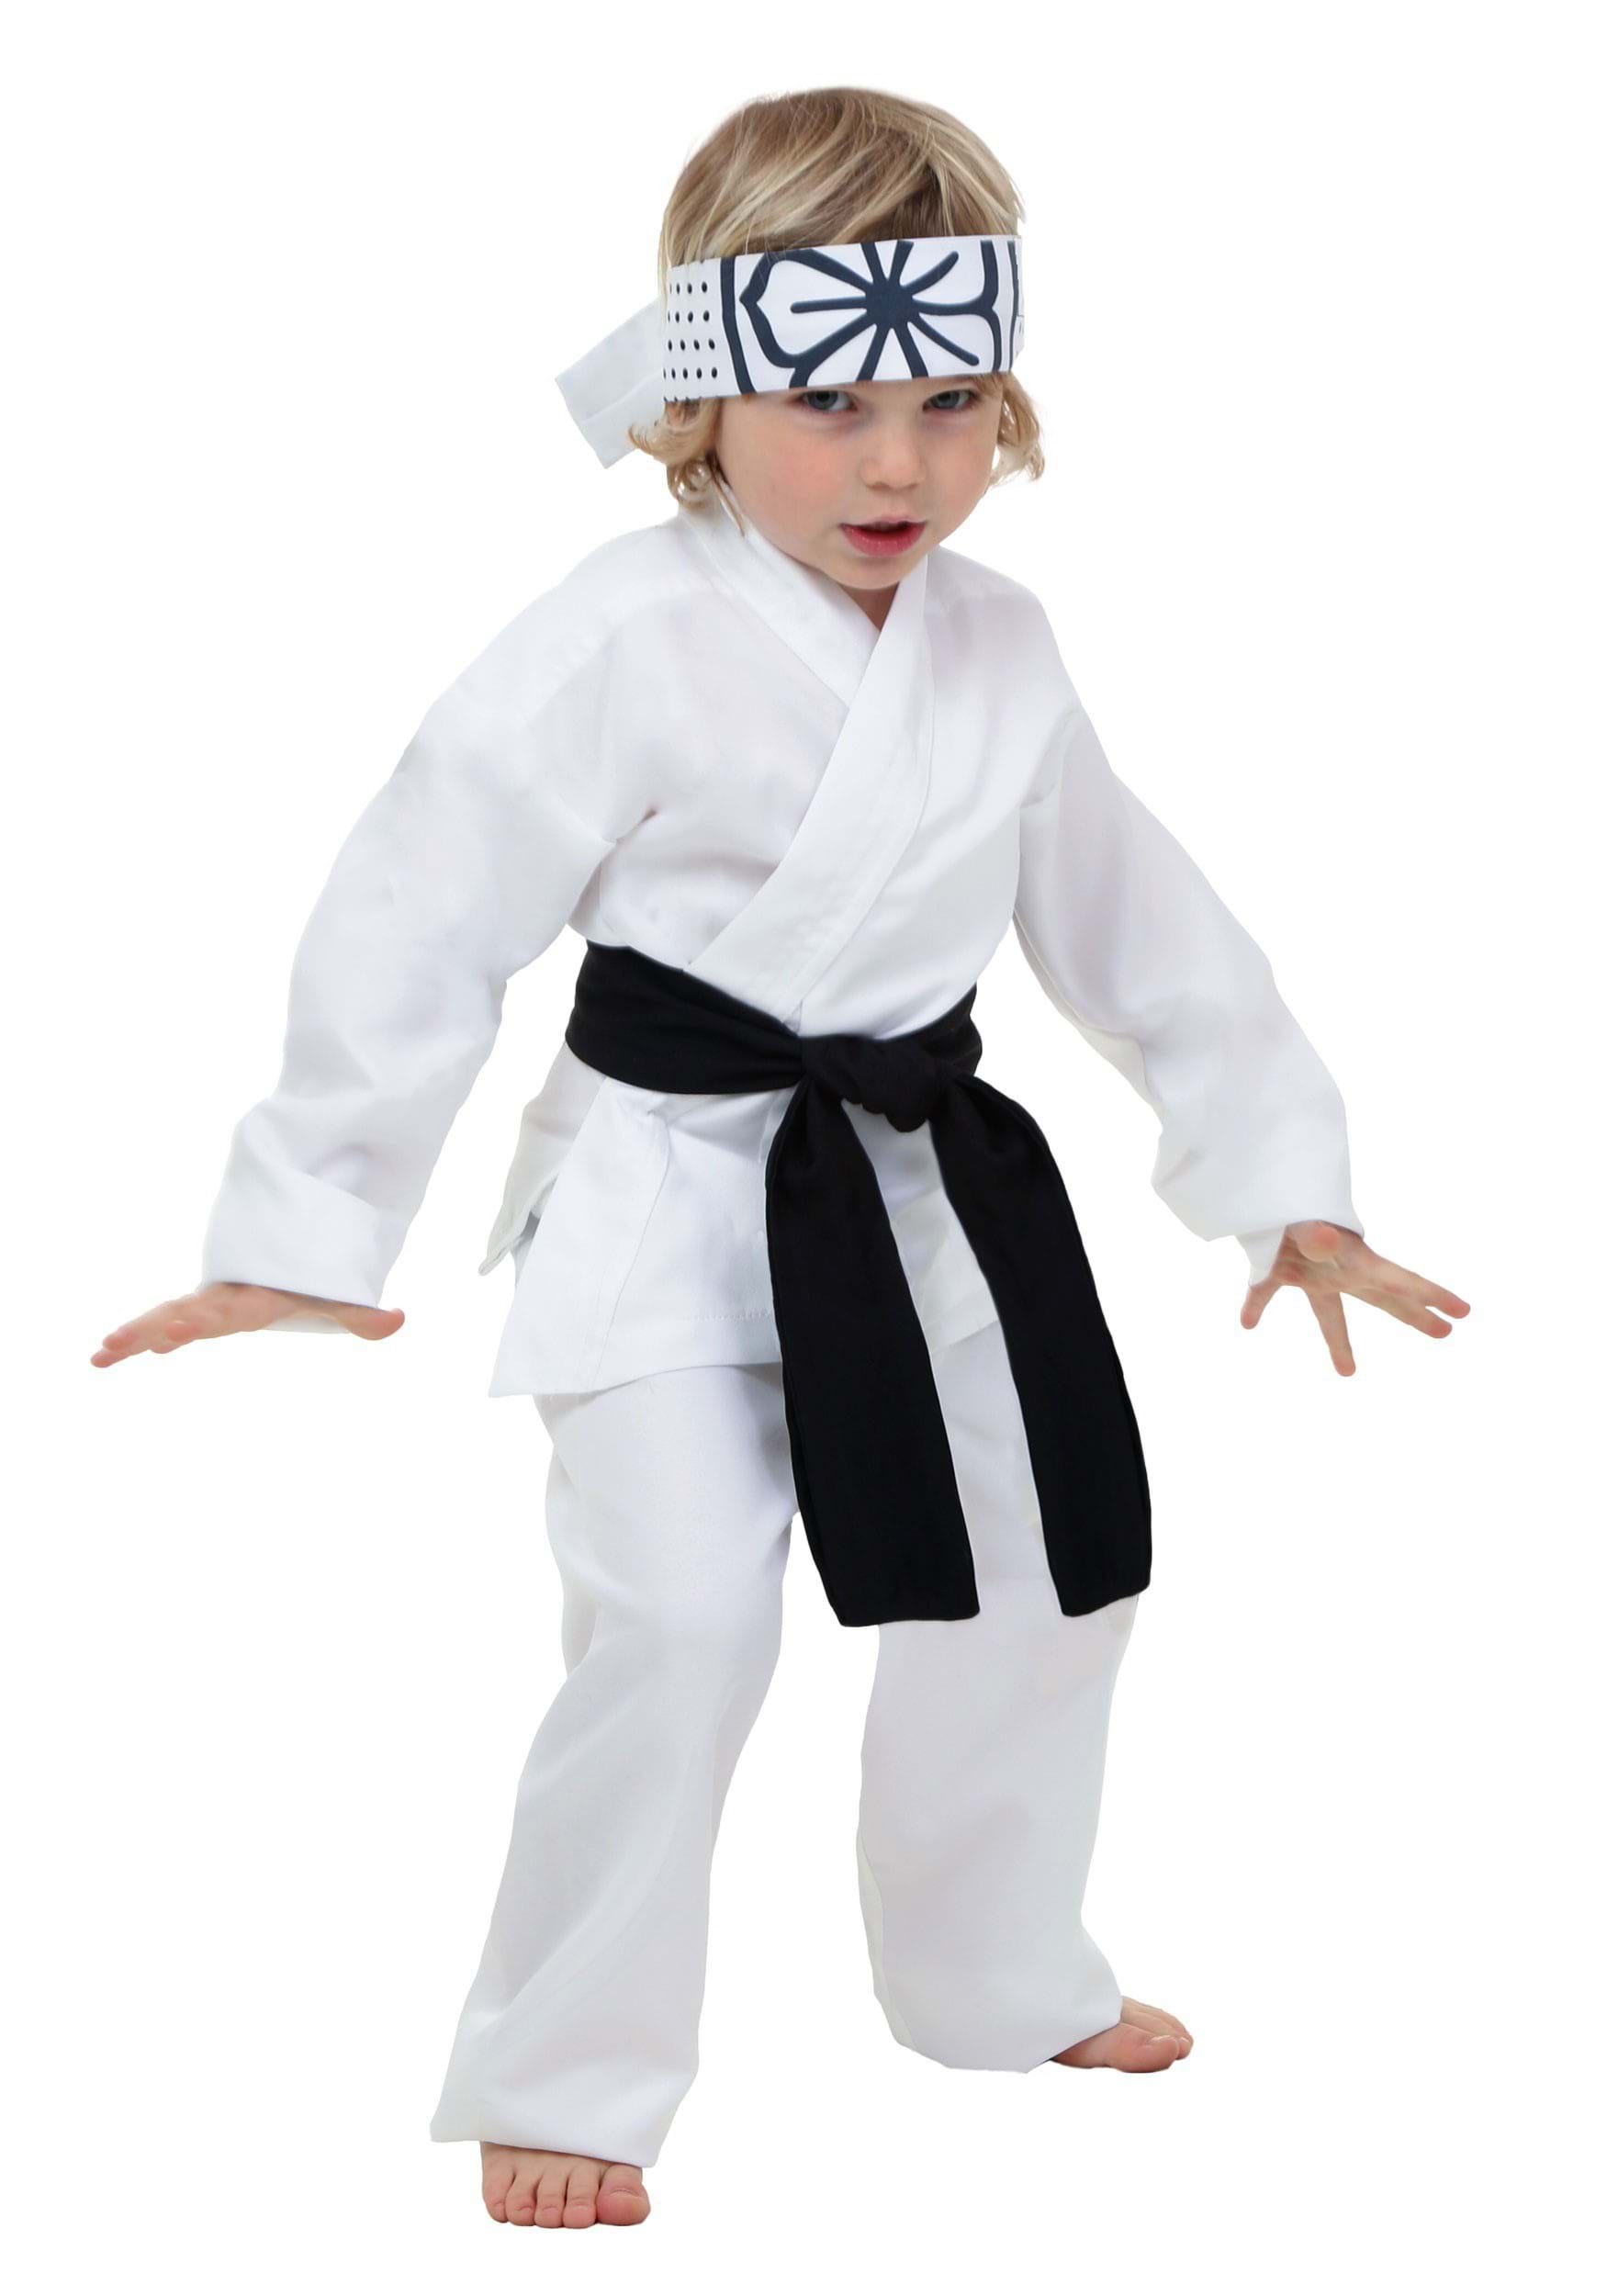 Photos - Fancy Dress Toddler FUN Costumes  Karate Kid Daniel San Costume Black/White KAR2227 